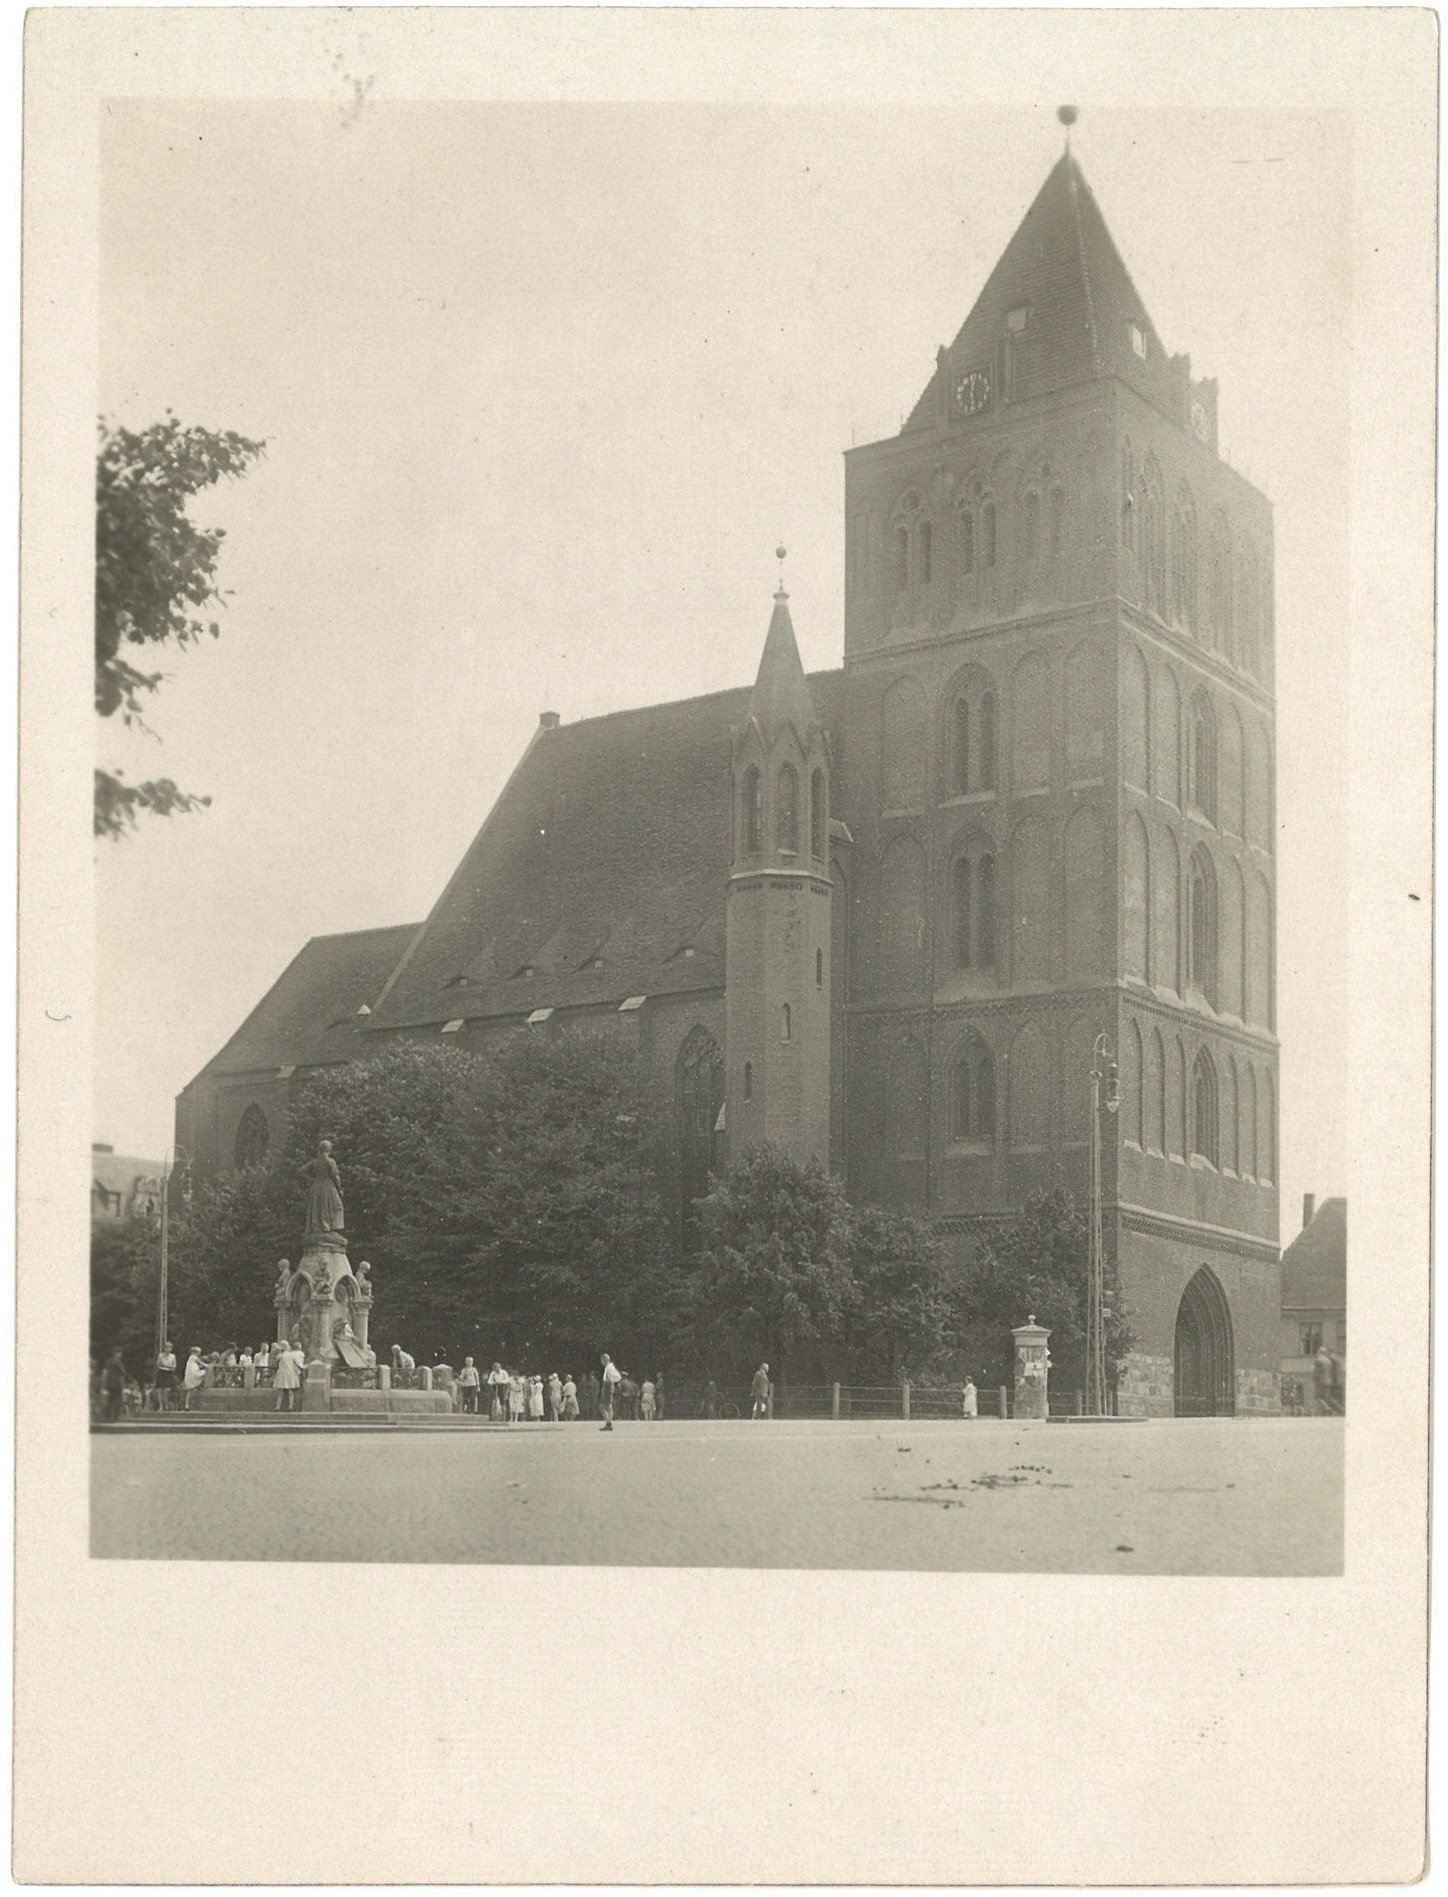 Arnswalde / Choszczno: Marienkirche von Nordwesten (Landesgeschichtliche Vereinigung für die Mark Brandenburg e.V., Archiv CC BY)